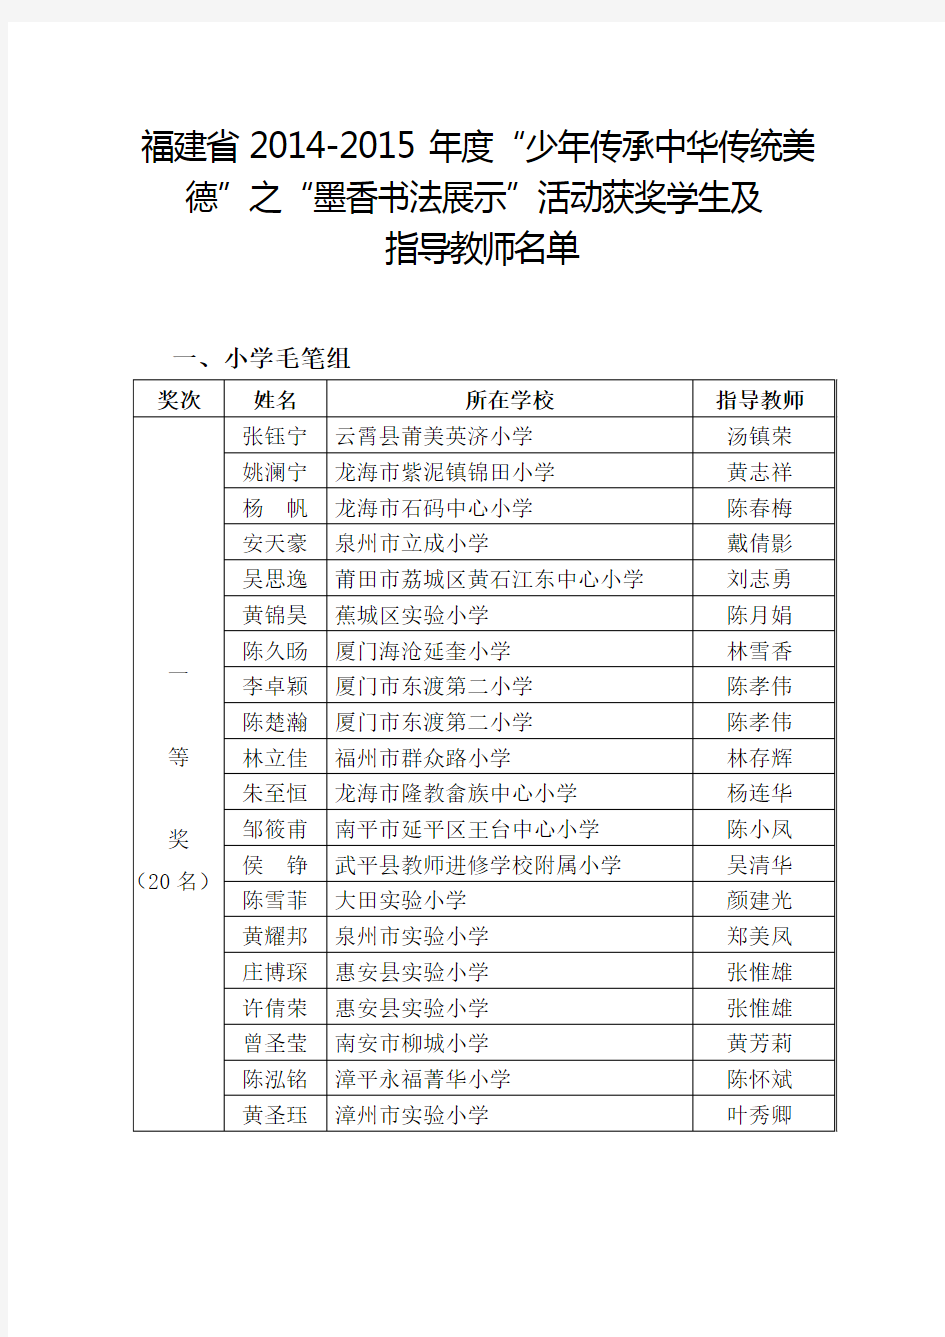 2015年墨香书法活动获奖学生及指导教师名单